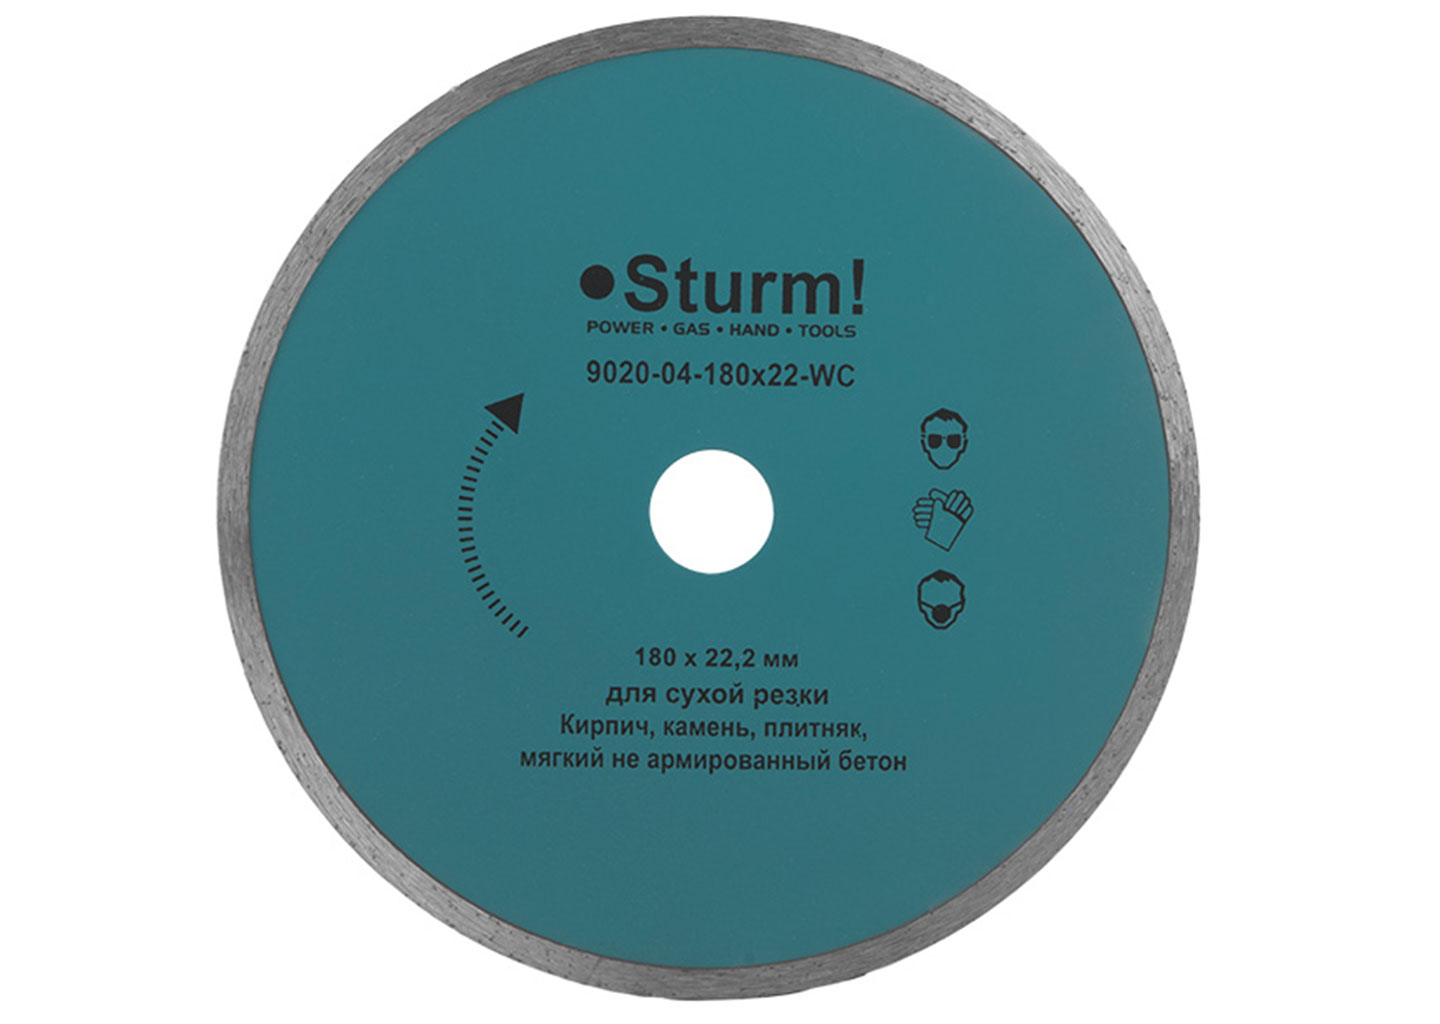 Алмазный диск, сплошной слой (180х22.2 мм), Sturm! 9020-04-180x22-WC